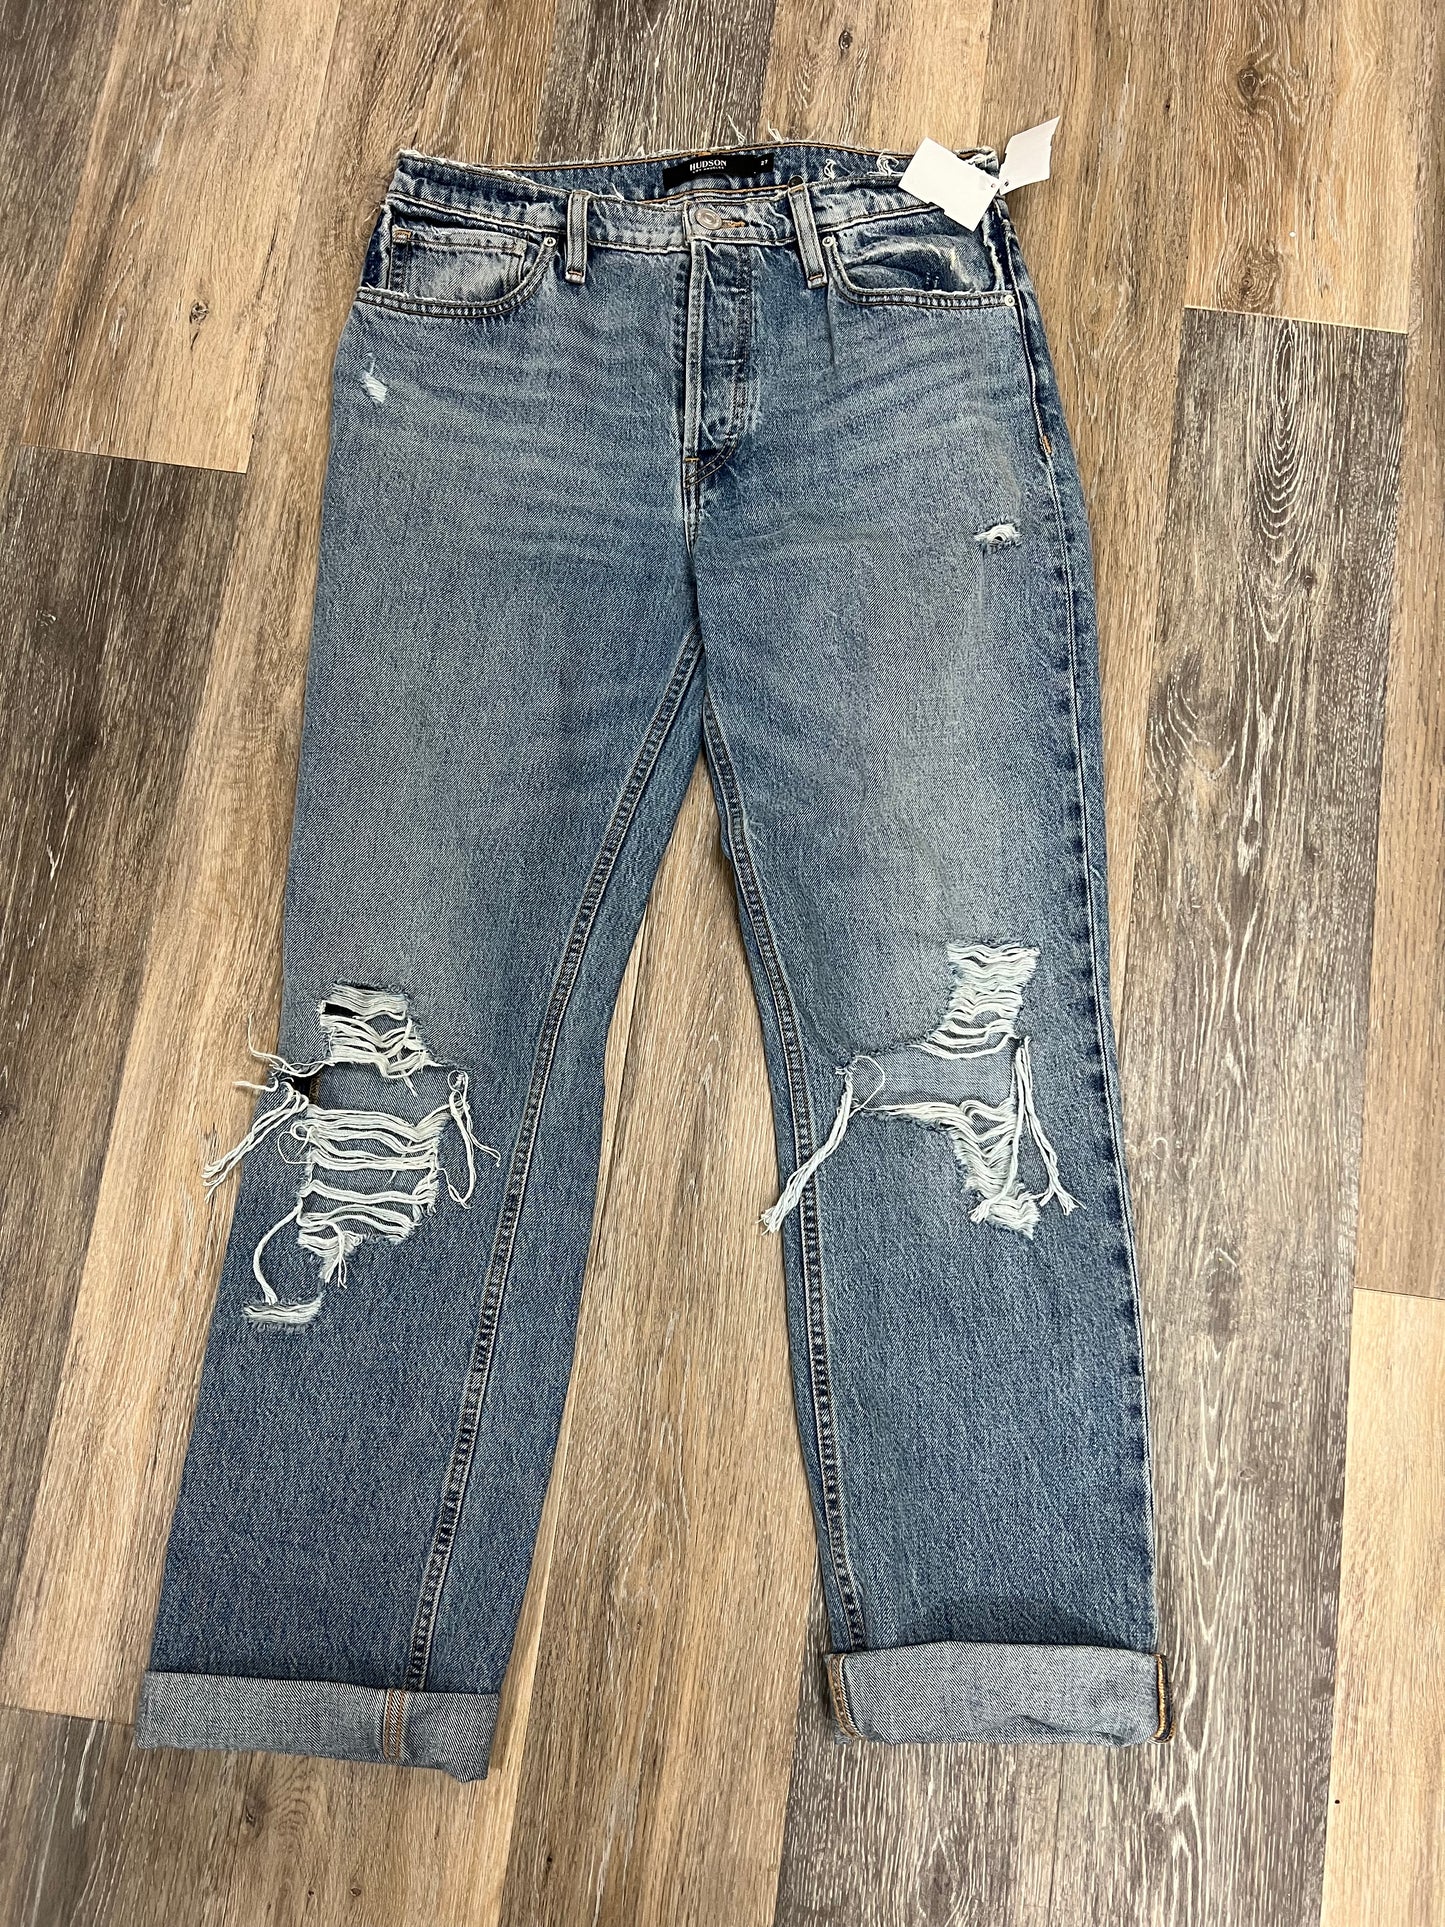 Jeans Designer By Hudson  Size: 4/27